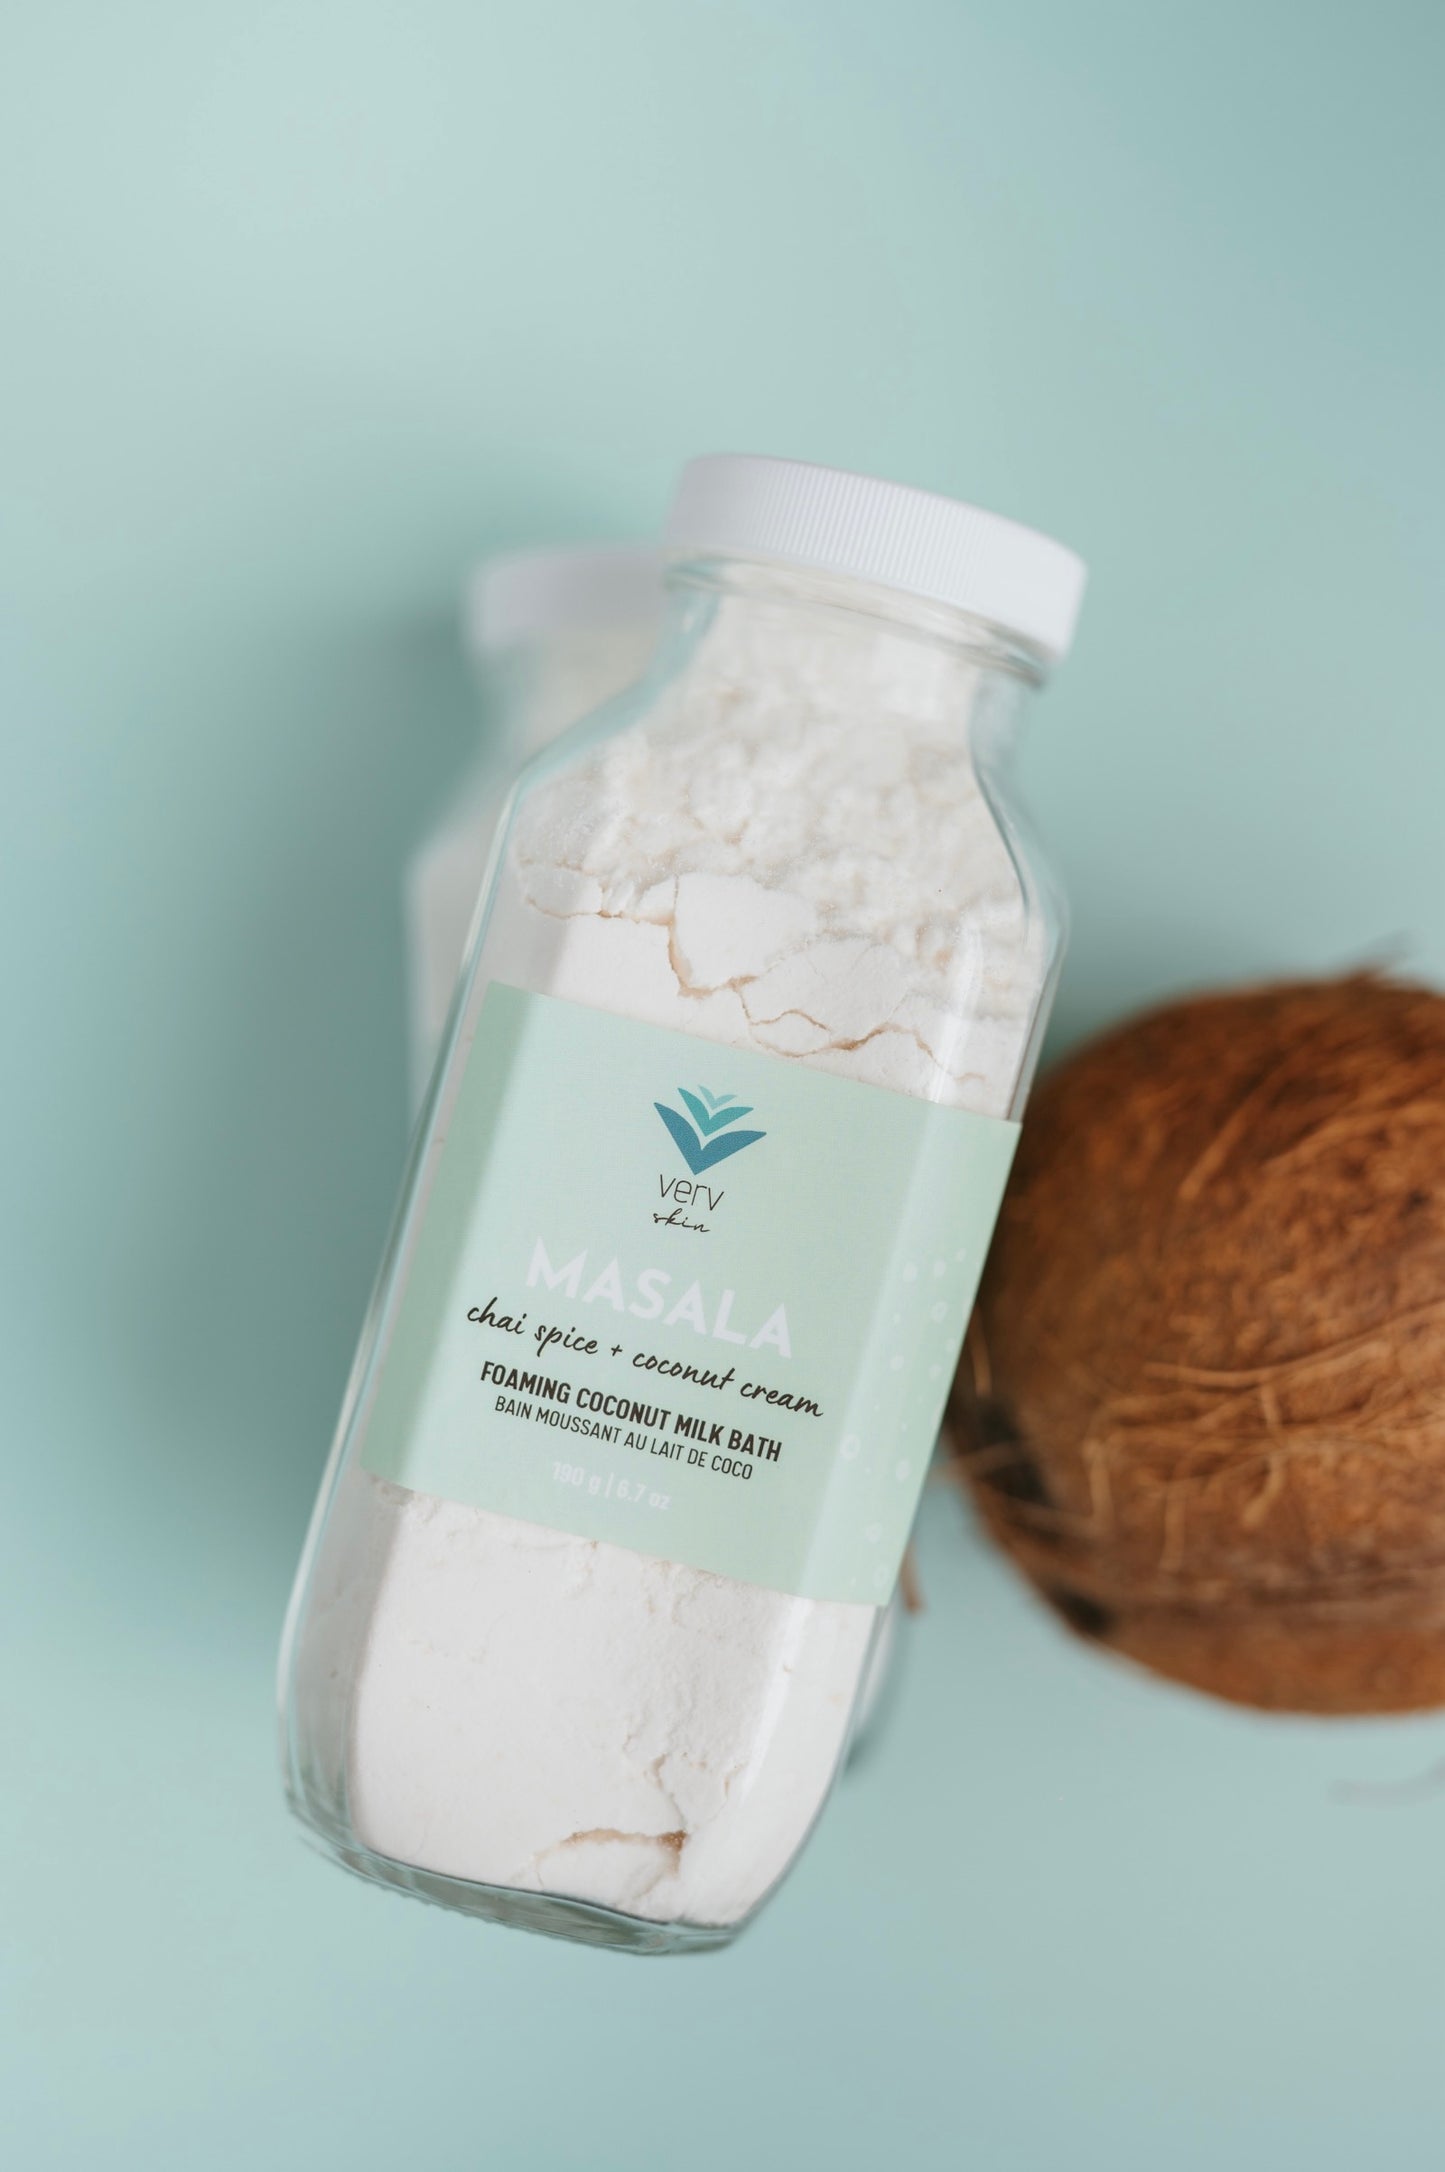 Foaming Coconut Milk Bath | MASALA Chai Spice + Coconut Cream